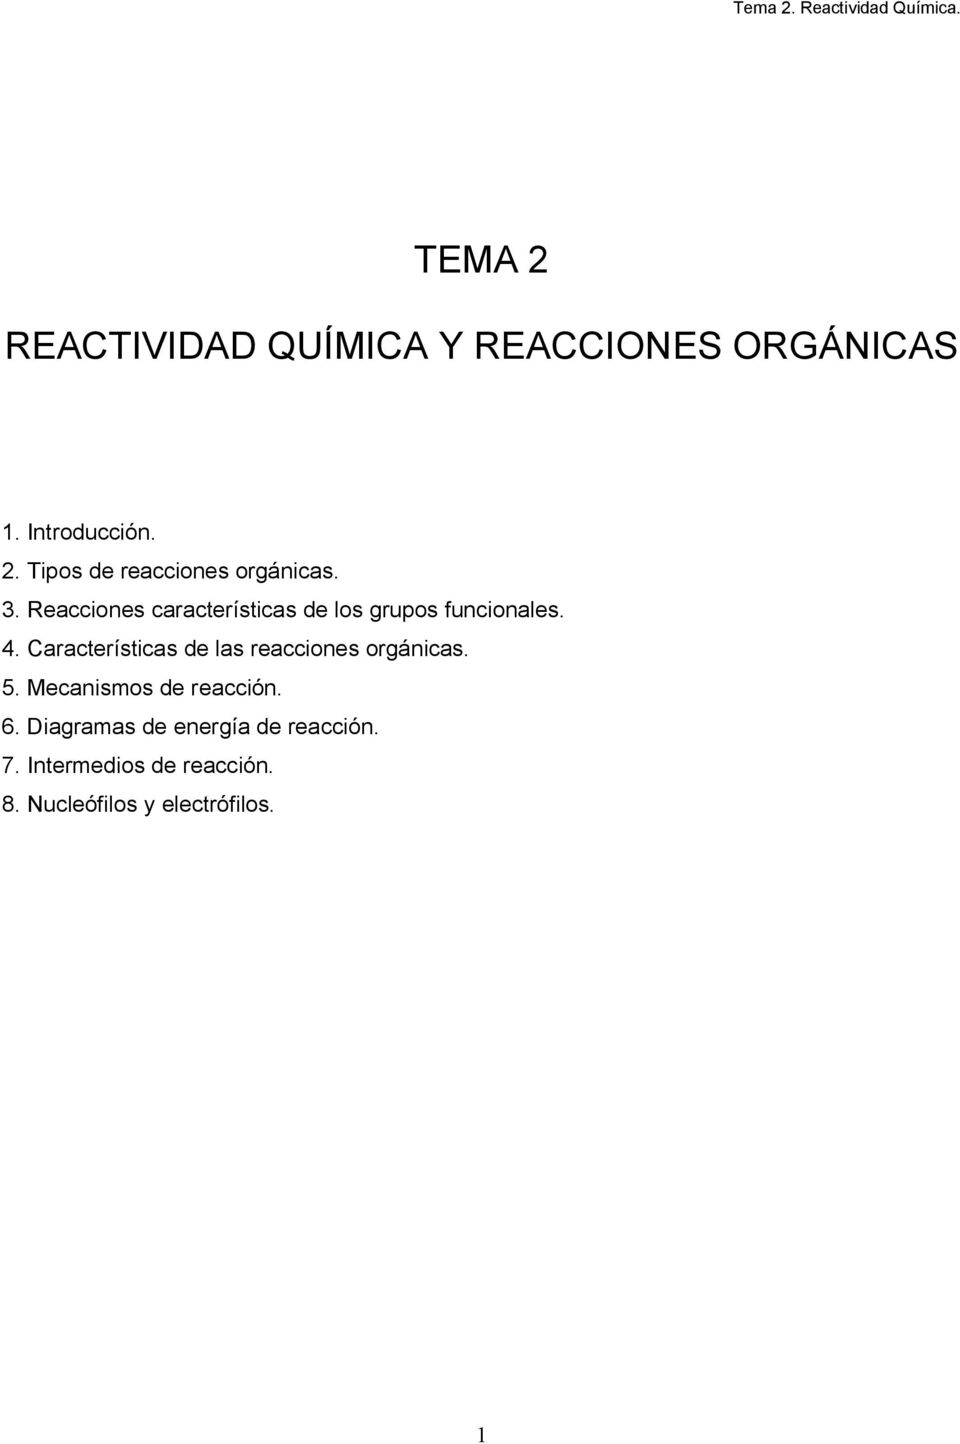 aracterísticas de las reacciones orgánicas. 5. Mecanismos de reacción. 6.